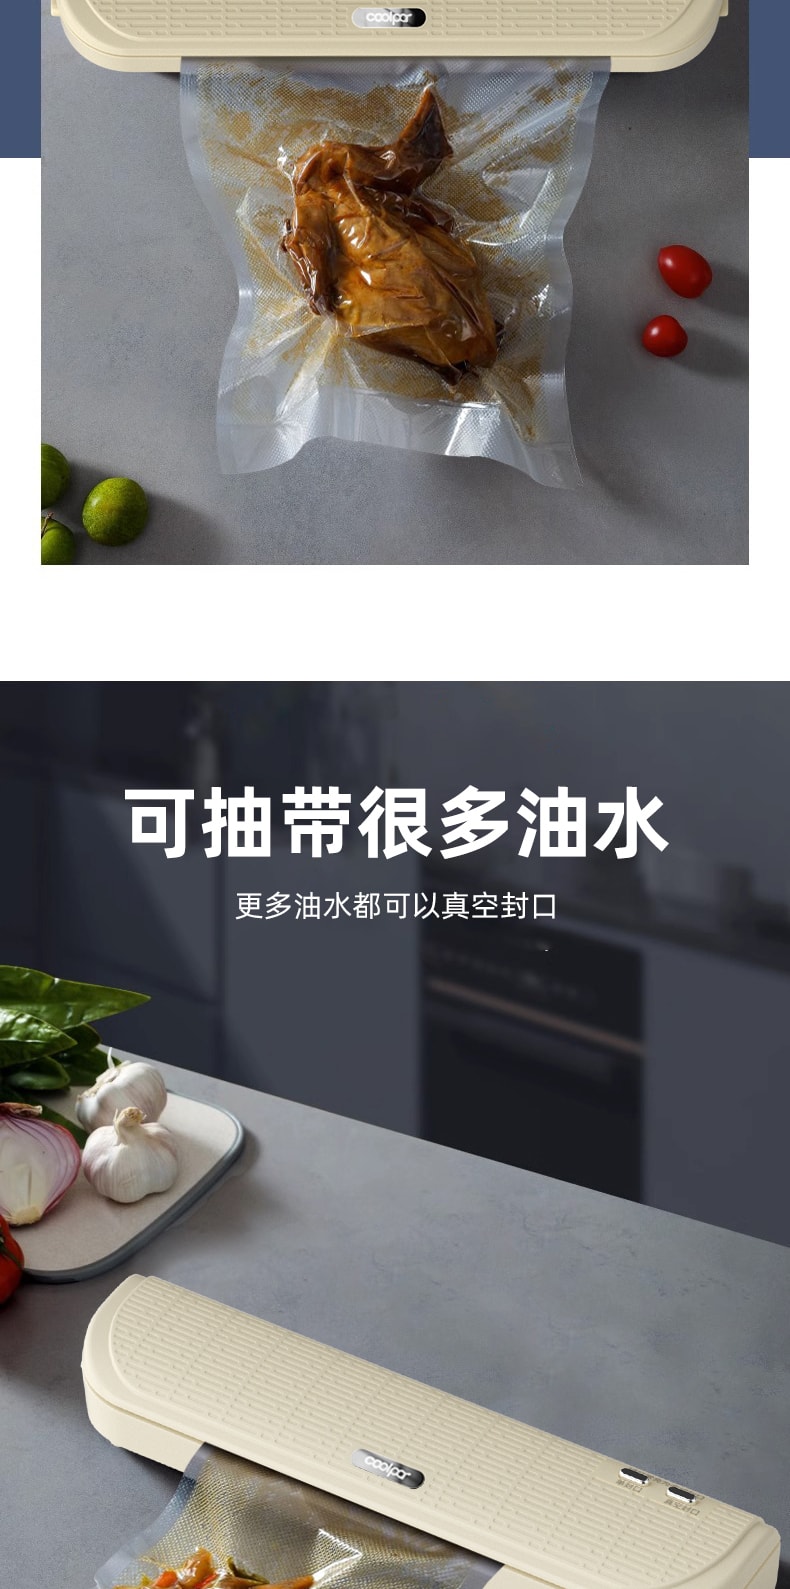 中国MinHuang敏煌 自动真空封口机小型塑封机家用食品保鲜封口机 白色 1件